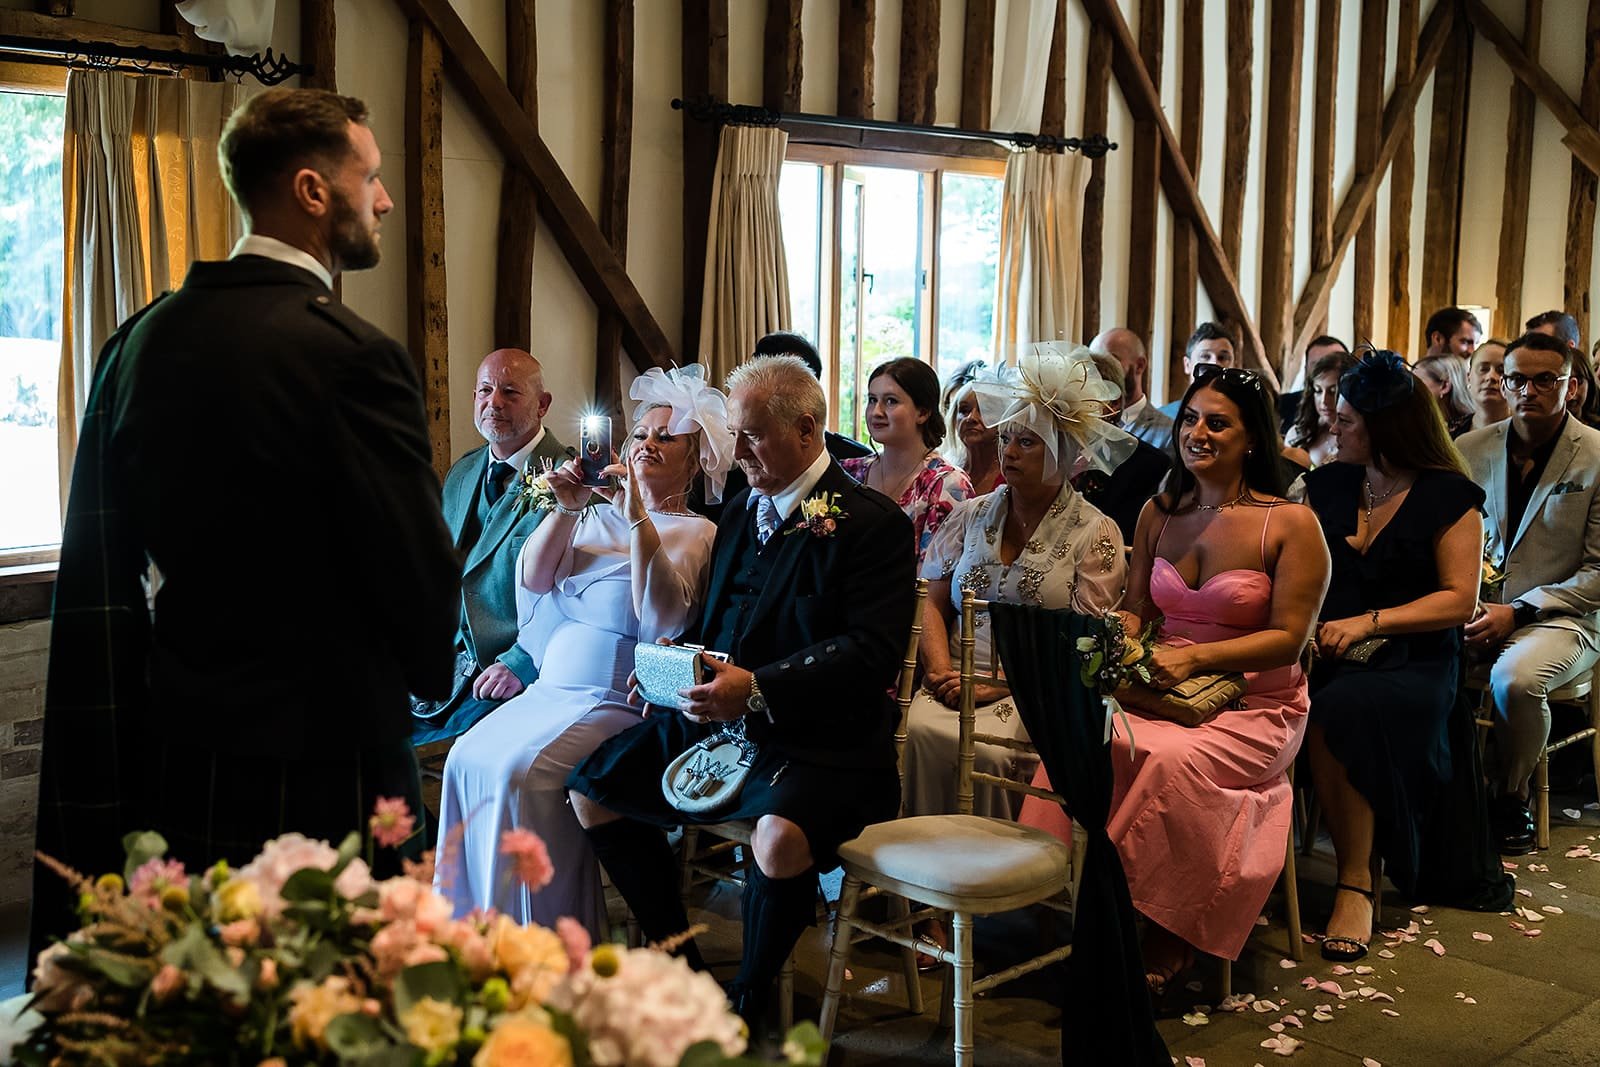 Haughley park barn wedding